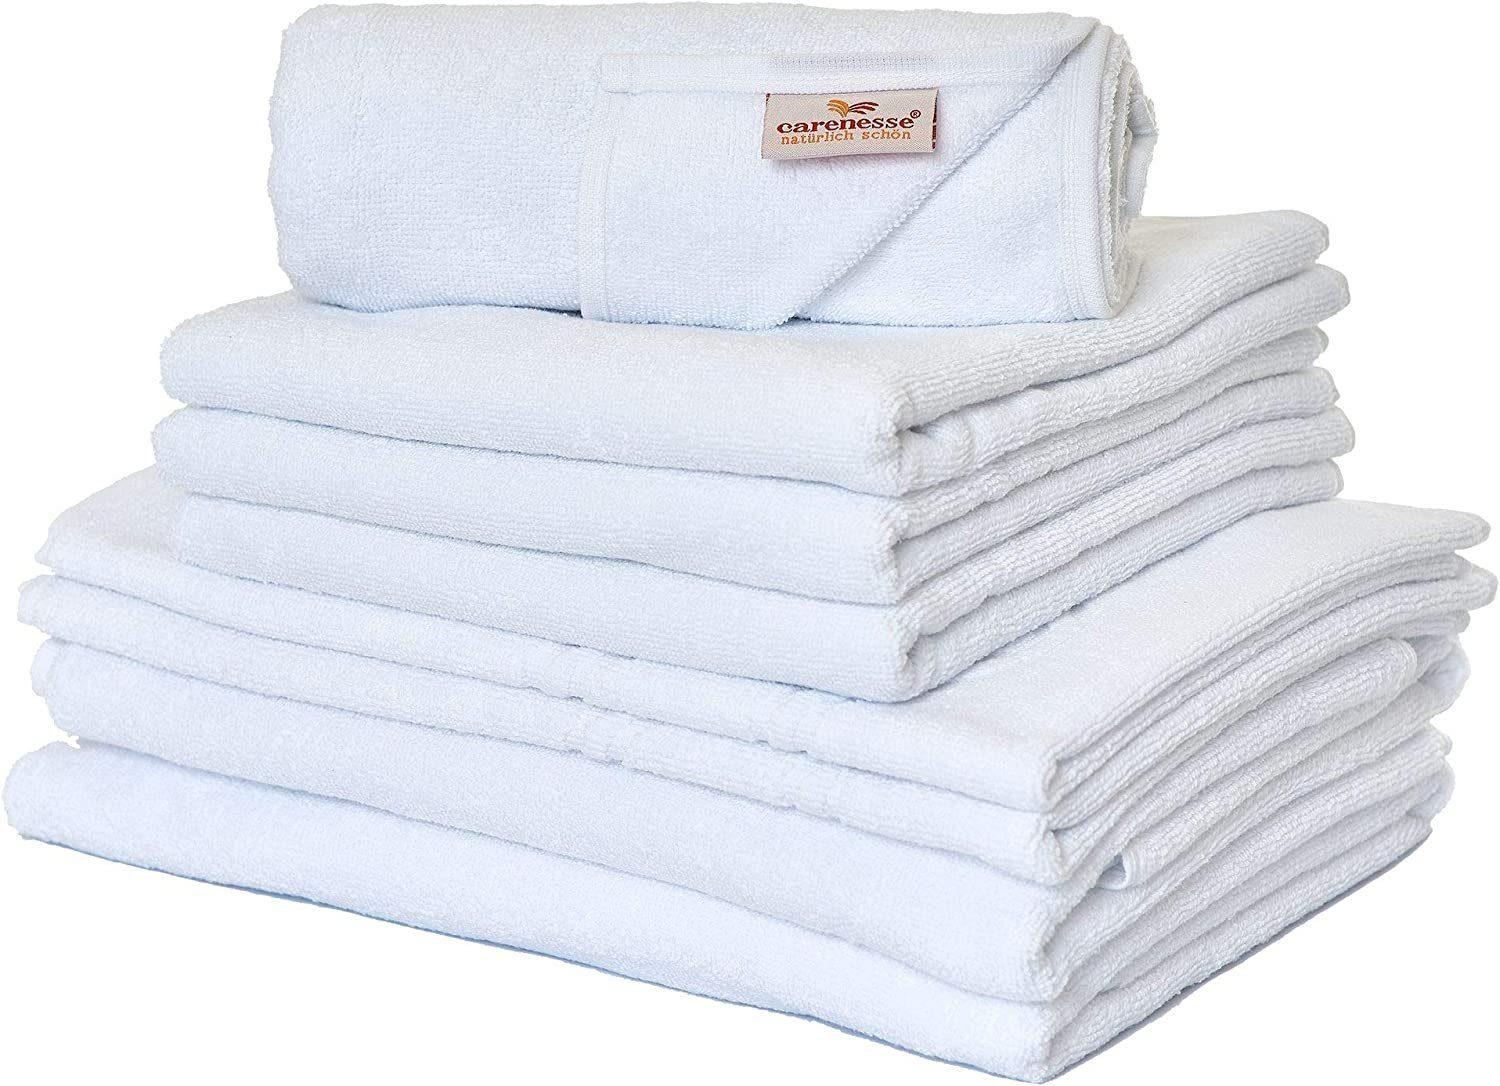 Carenesse Handtuch Set 4x Handtuch, 2x Duschtuch, 2x Badvorleger weiß, 8-tlg. 100% Baumwolle, Handtuch Set glatt & uni fusselfrei saugstark, Towel Frotteehandtuch